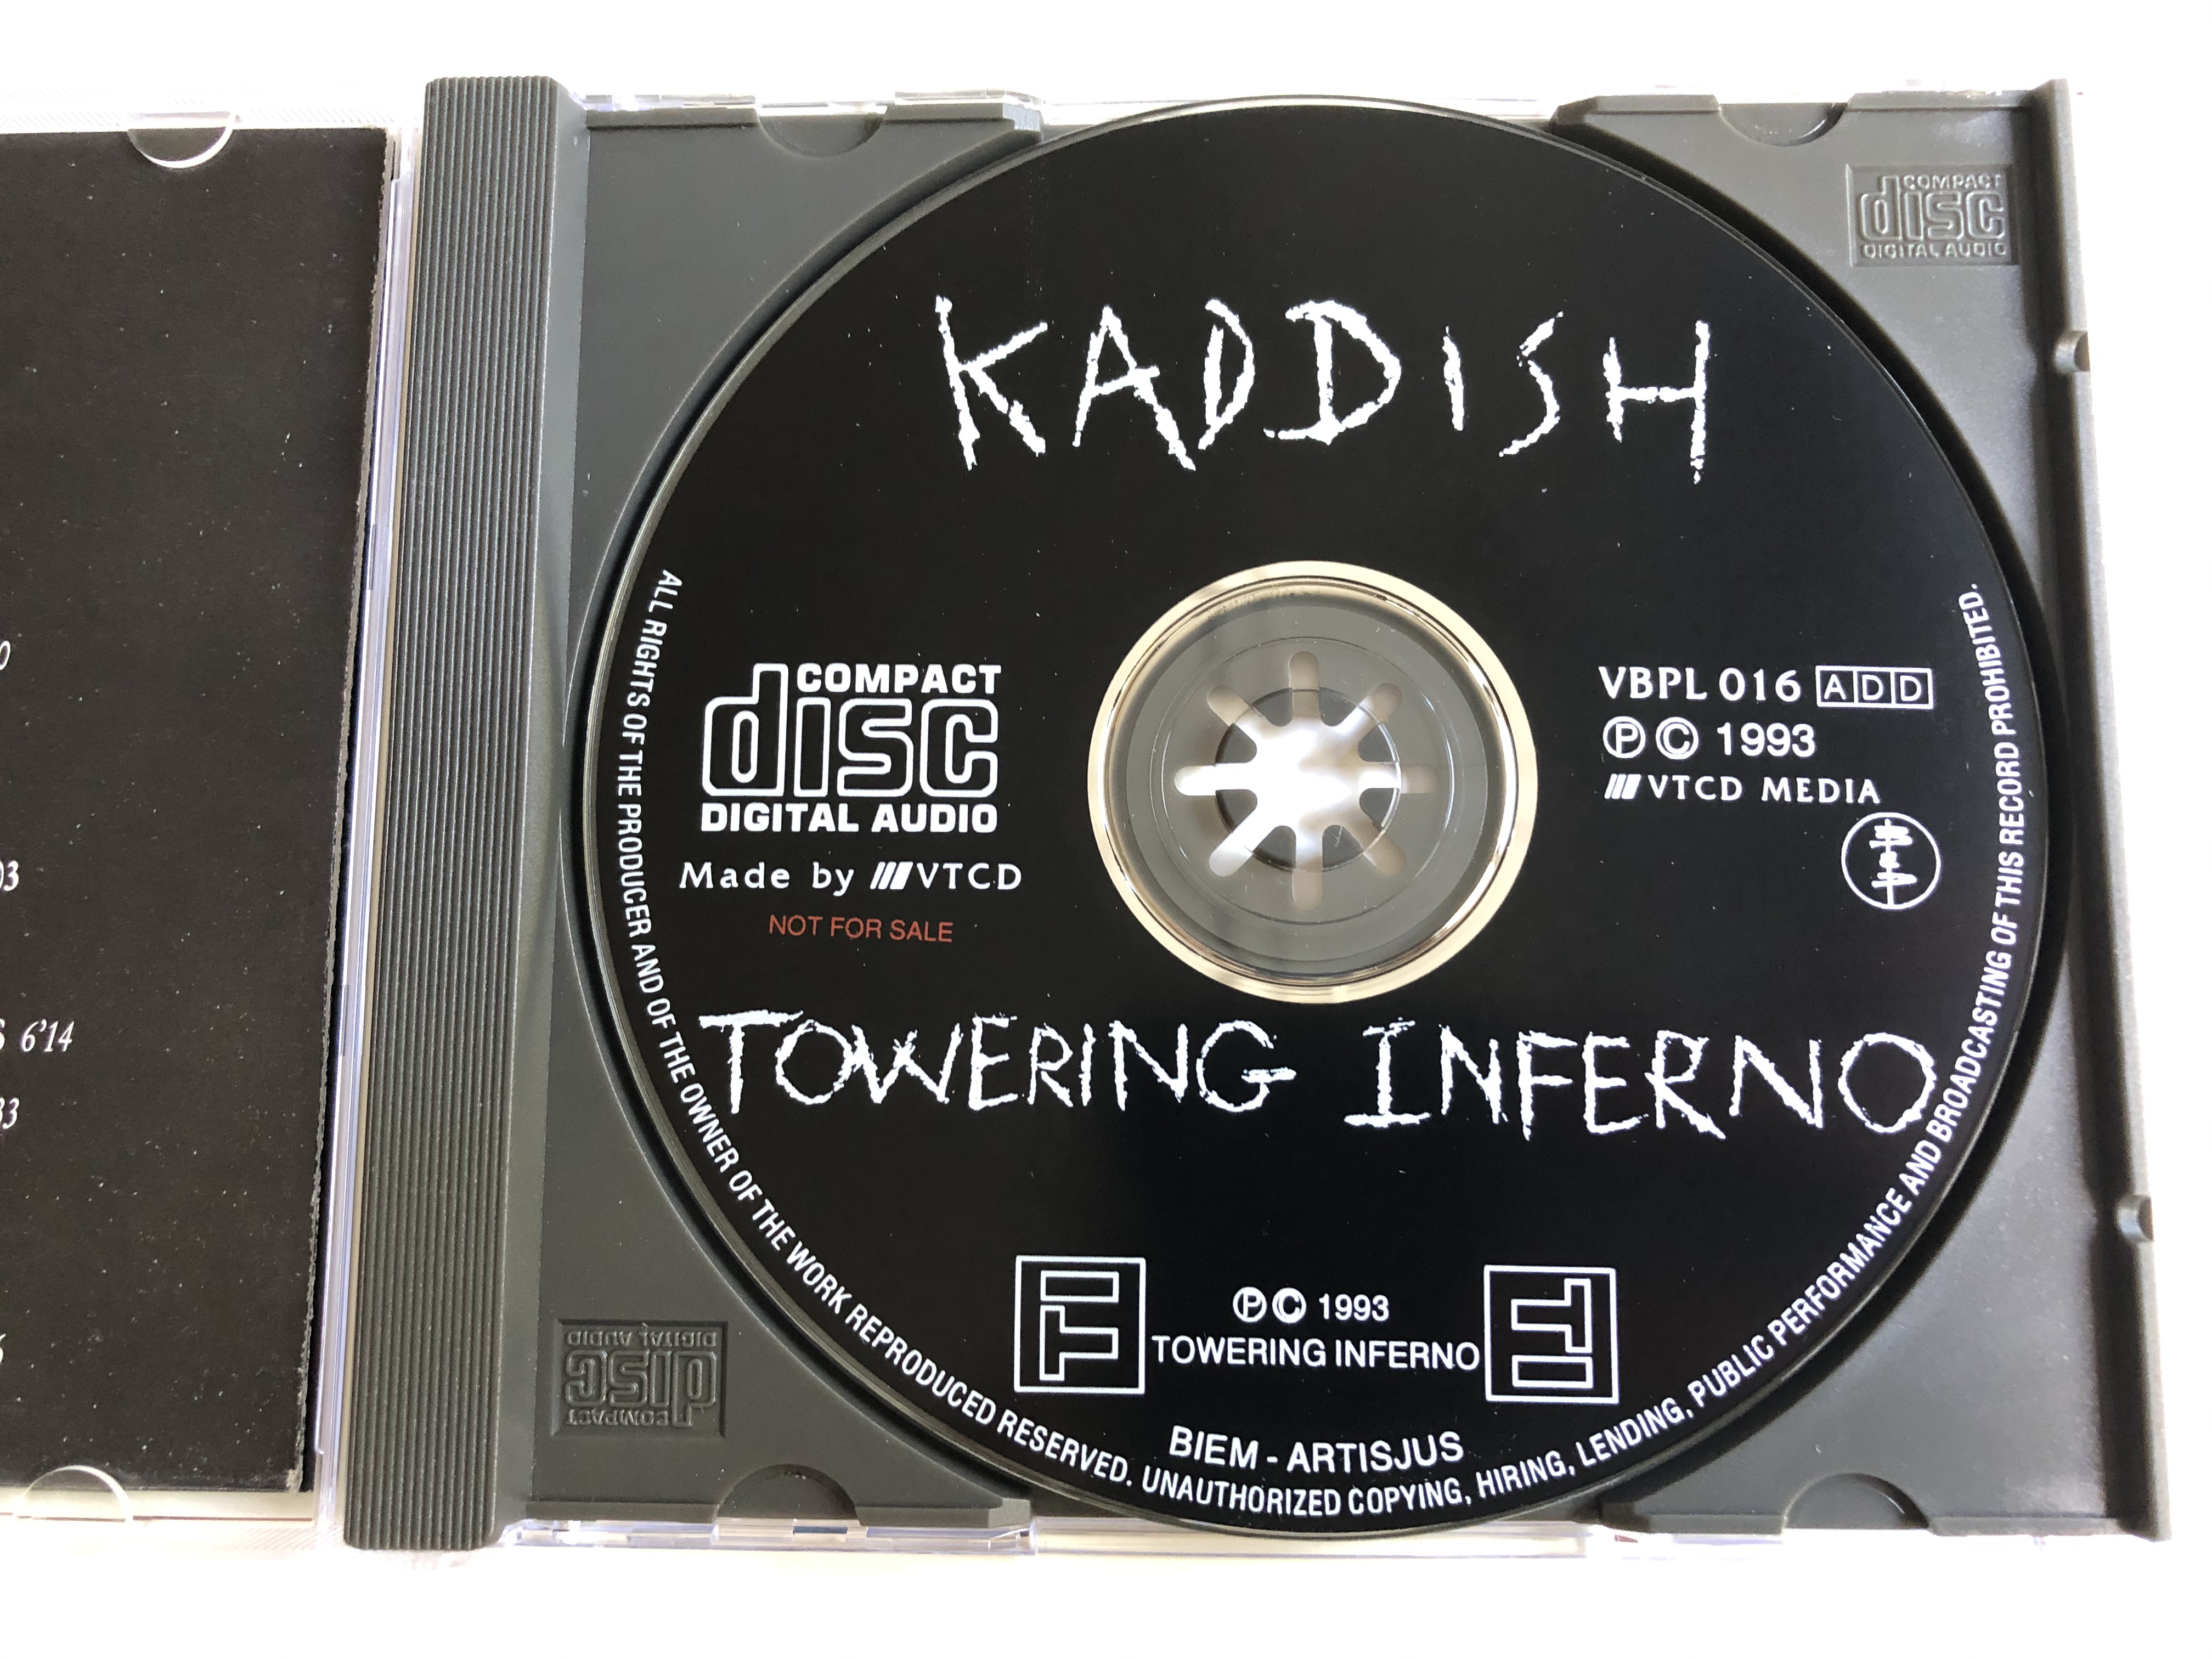 towering-inferno-kaddish-ti-records-audio-cd-1993-vbpl-016-5-.jpg